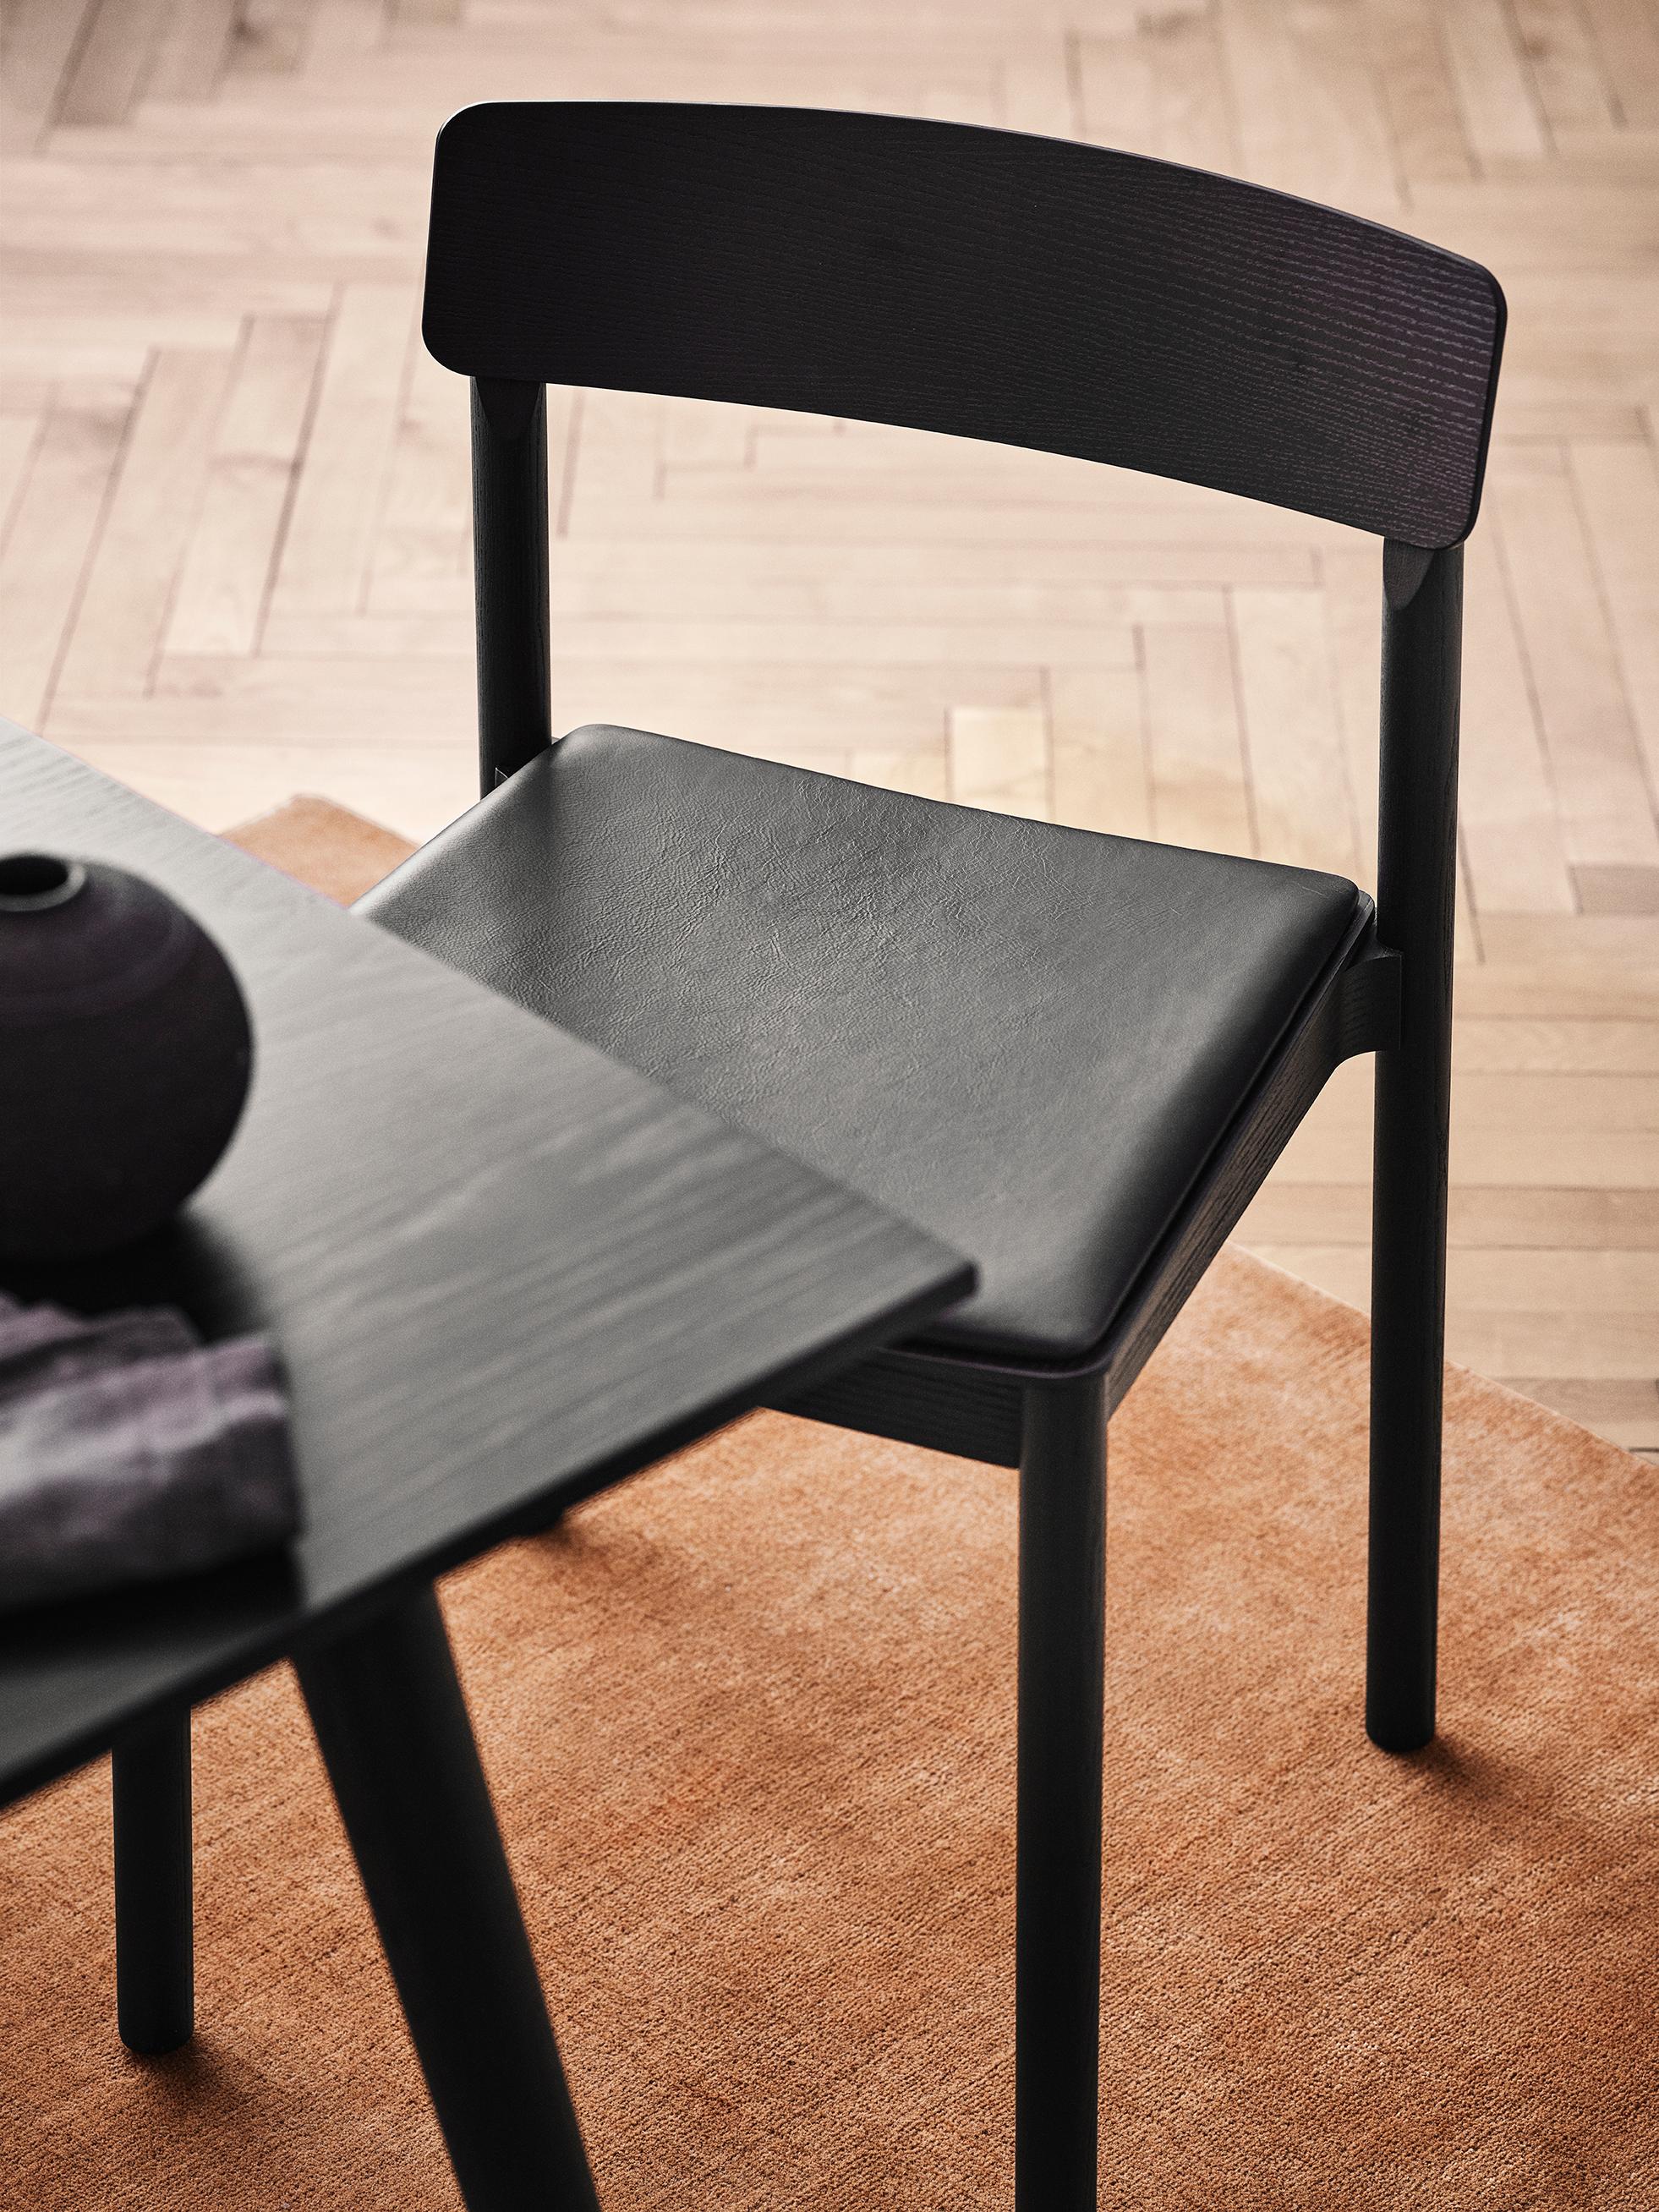 Nommée d'après le théâtre Betty Nansen de Copenhague, cette chaise bénéficie d'une construction exceptionnellement durable. 
Fabriqué avec une assise rembourrée, son design simple promet un confort exceptionnel.

La chaise est fabriquée en bois